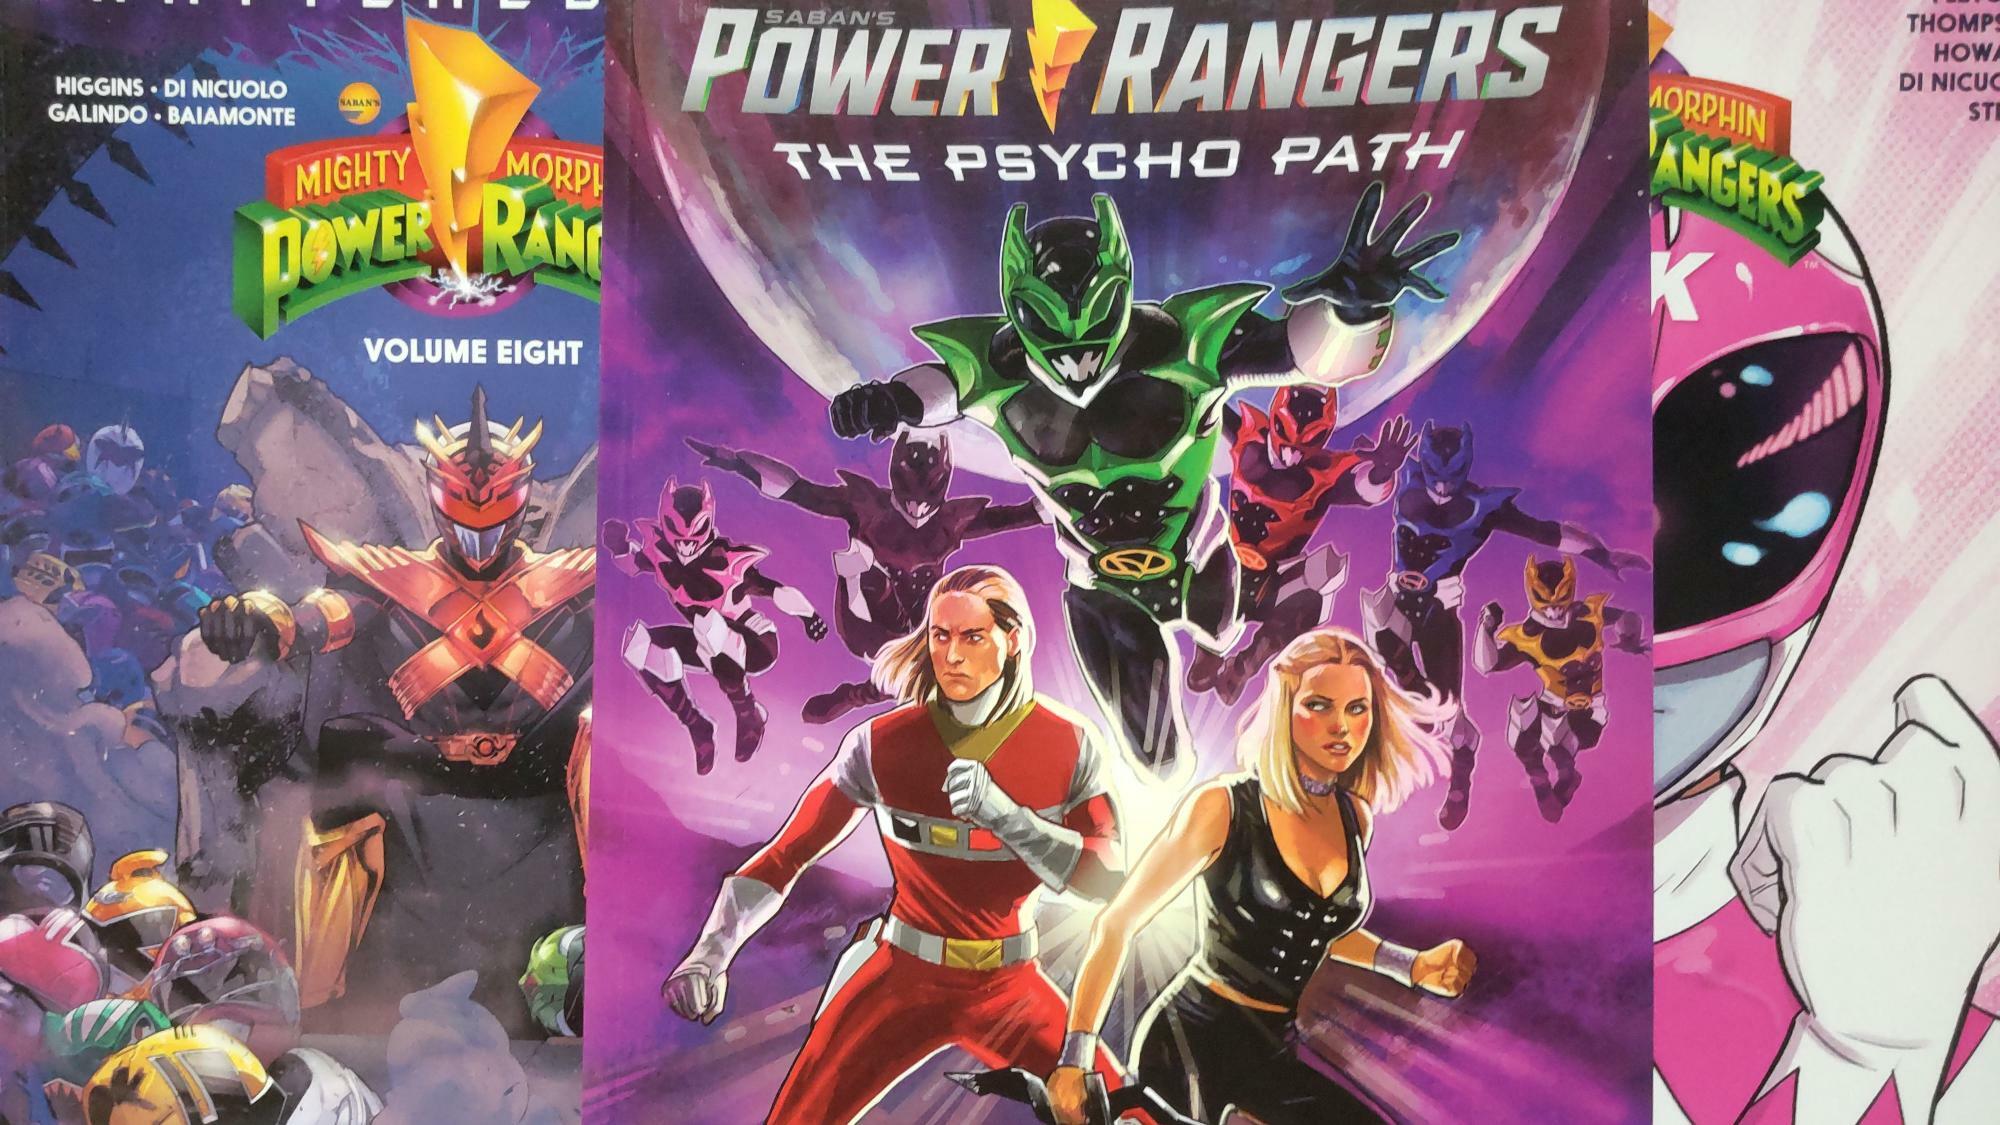 米国版スーパー戦隊シリーズ「パワーレンジャー」シリーズは、アメリカンコミックとして次々とスピンオフ作品が発表されており、ネジレンジャーが主人公のコミック（中央）も刊行されている（筆者撮影）。